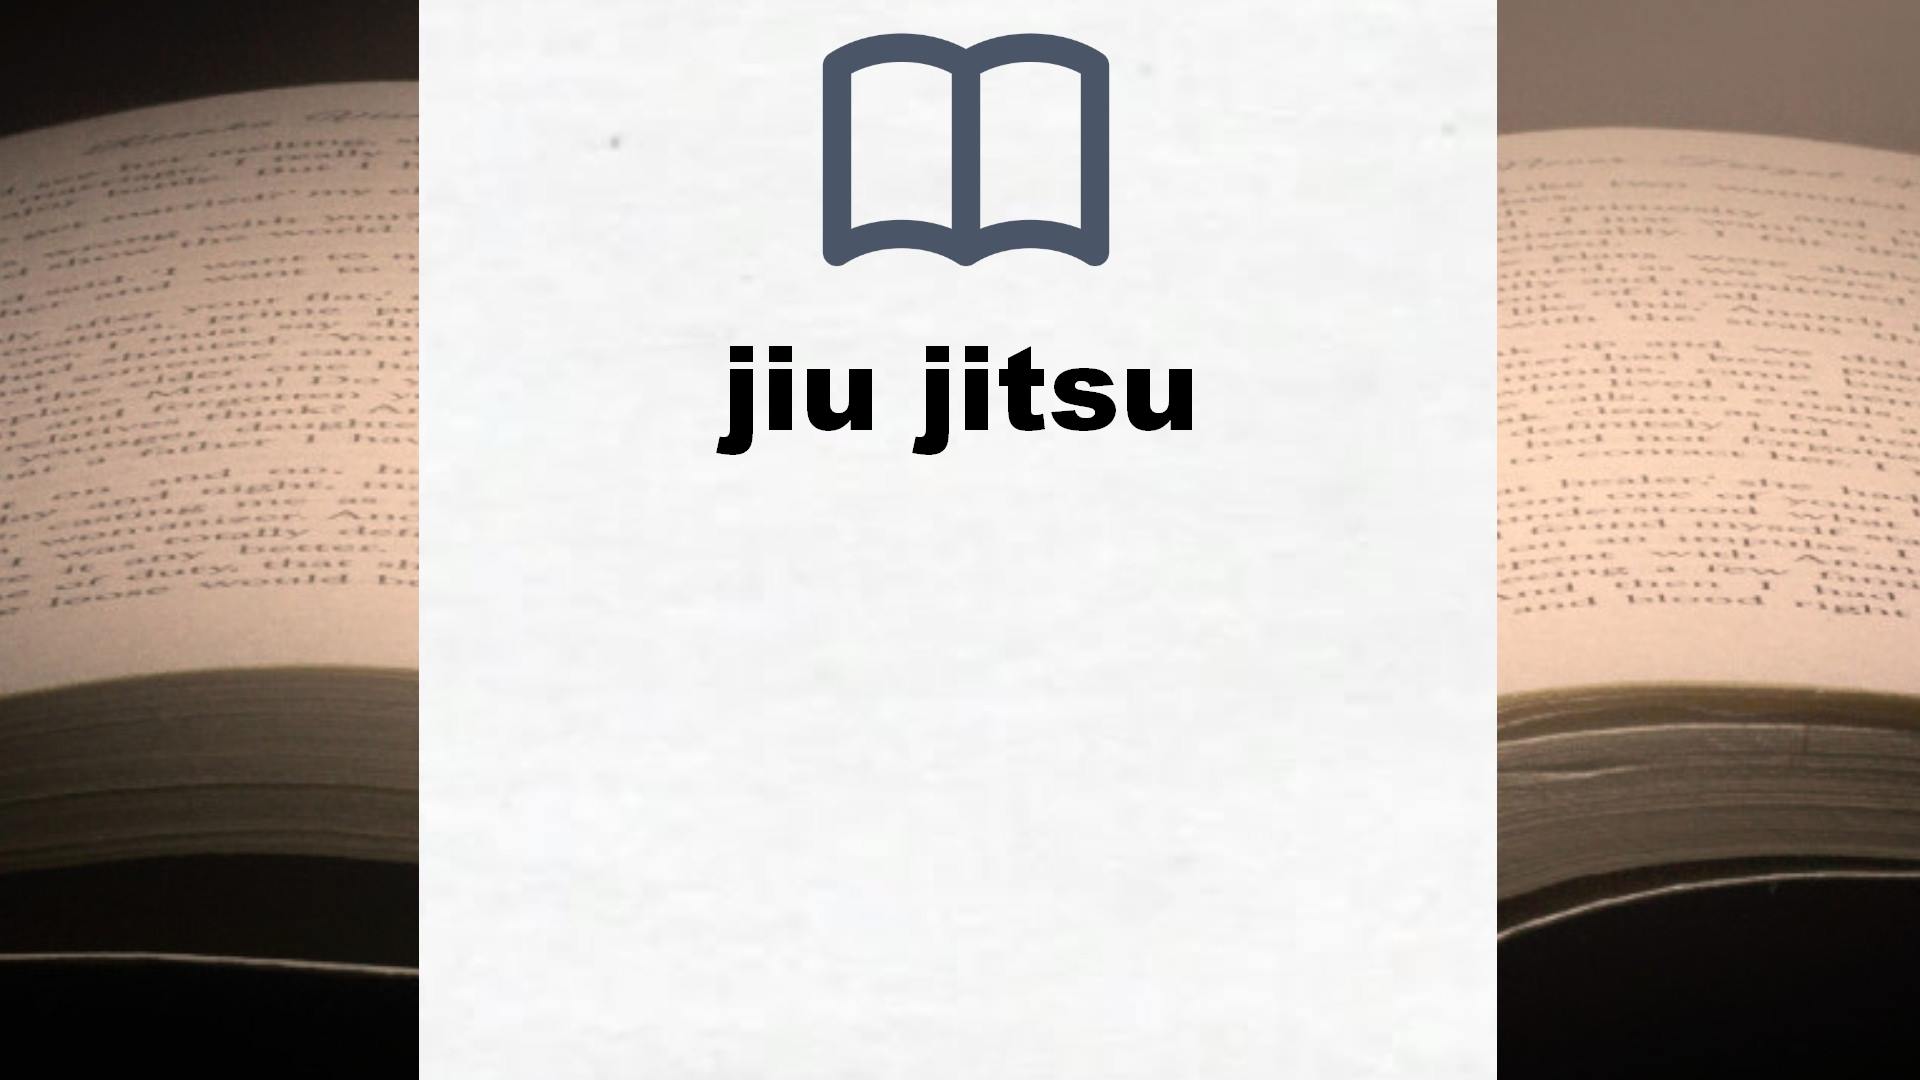 Libros sobre jiu jitsu